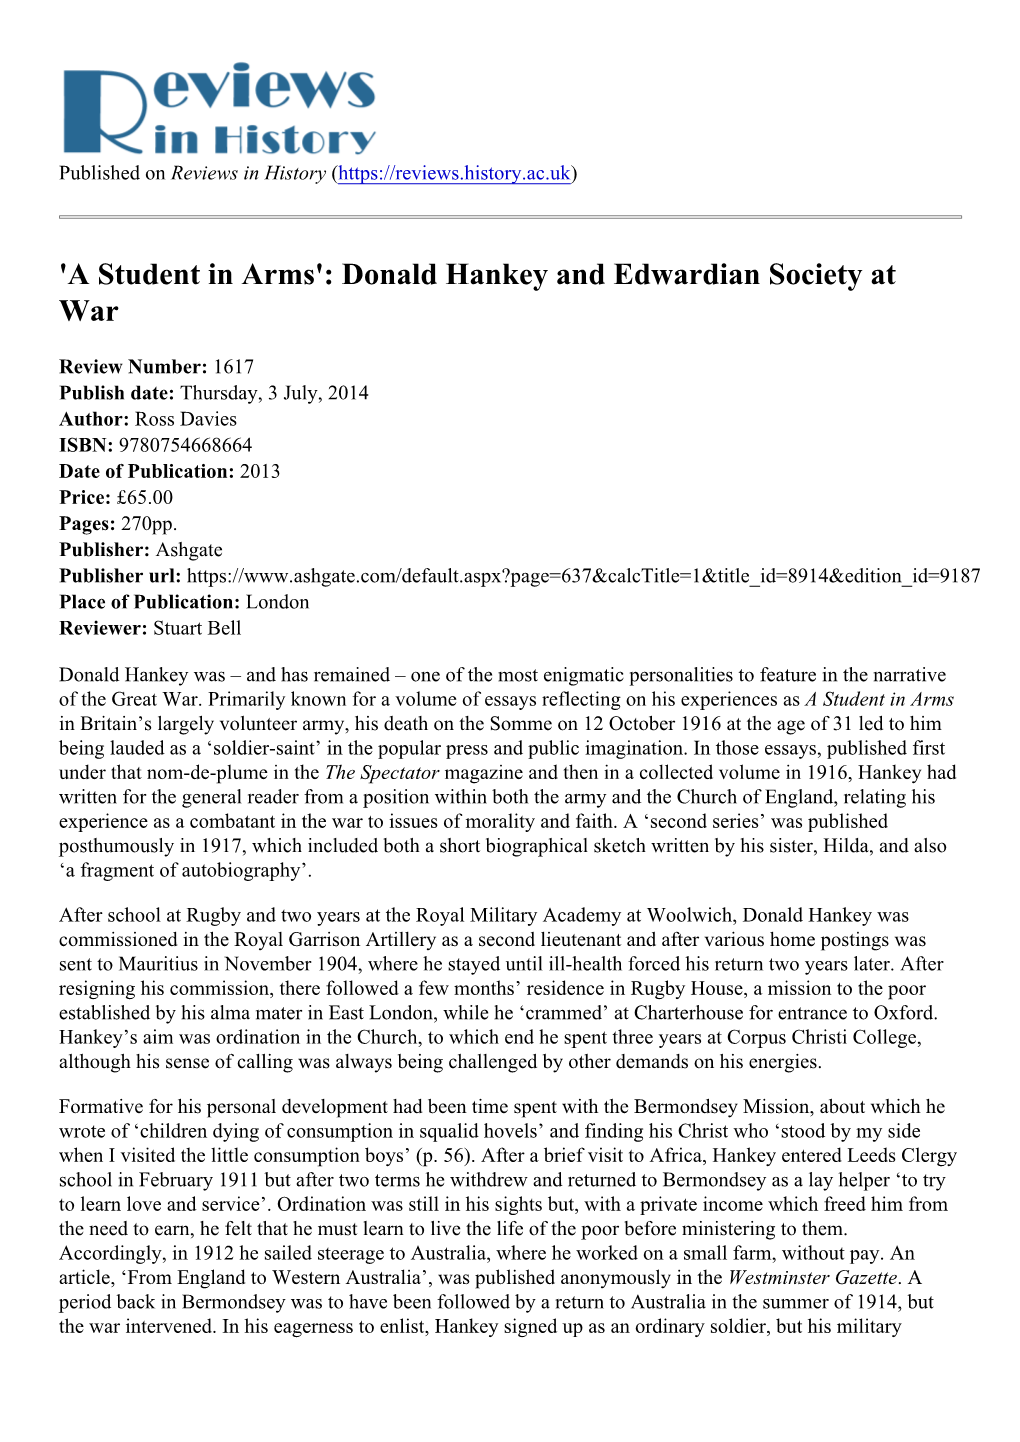 Donald Hankey and Edwardian Society at War